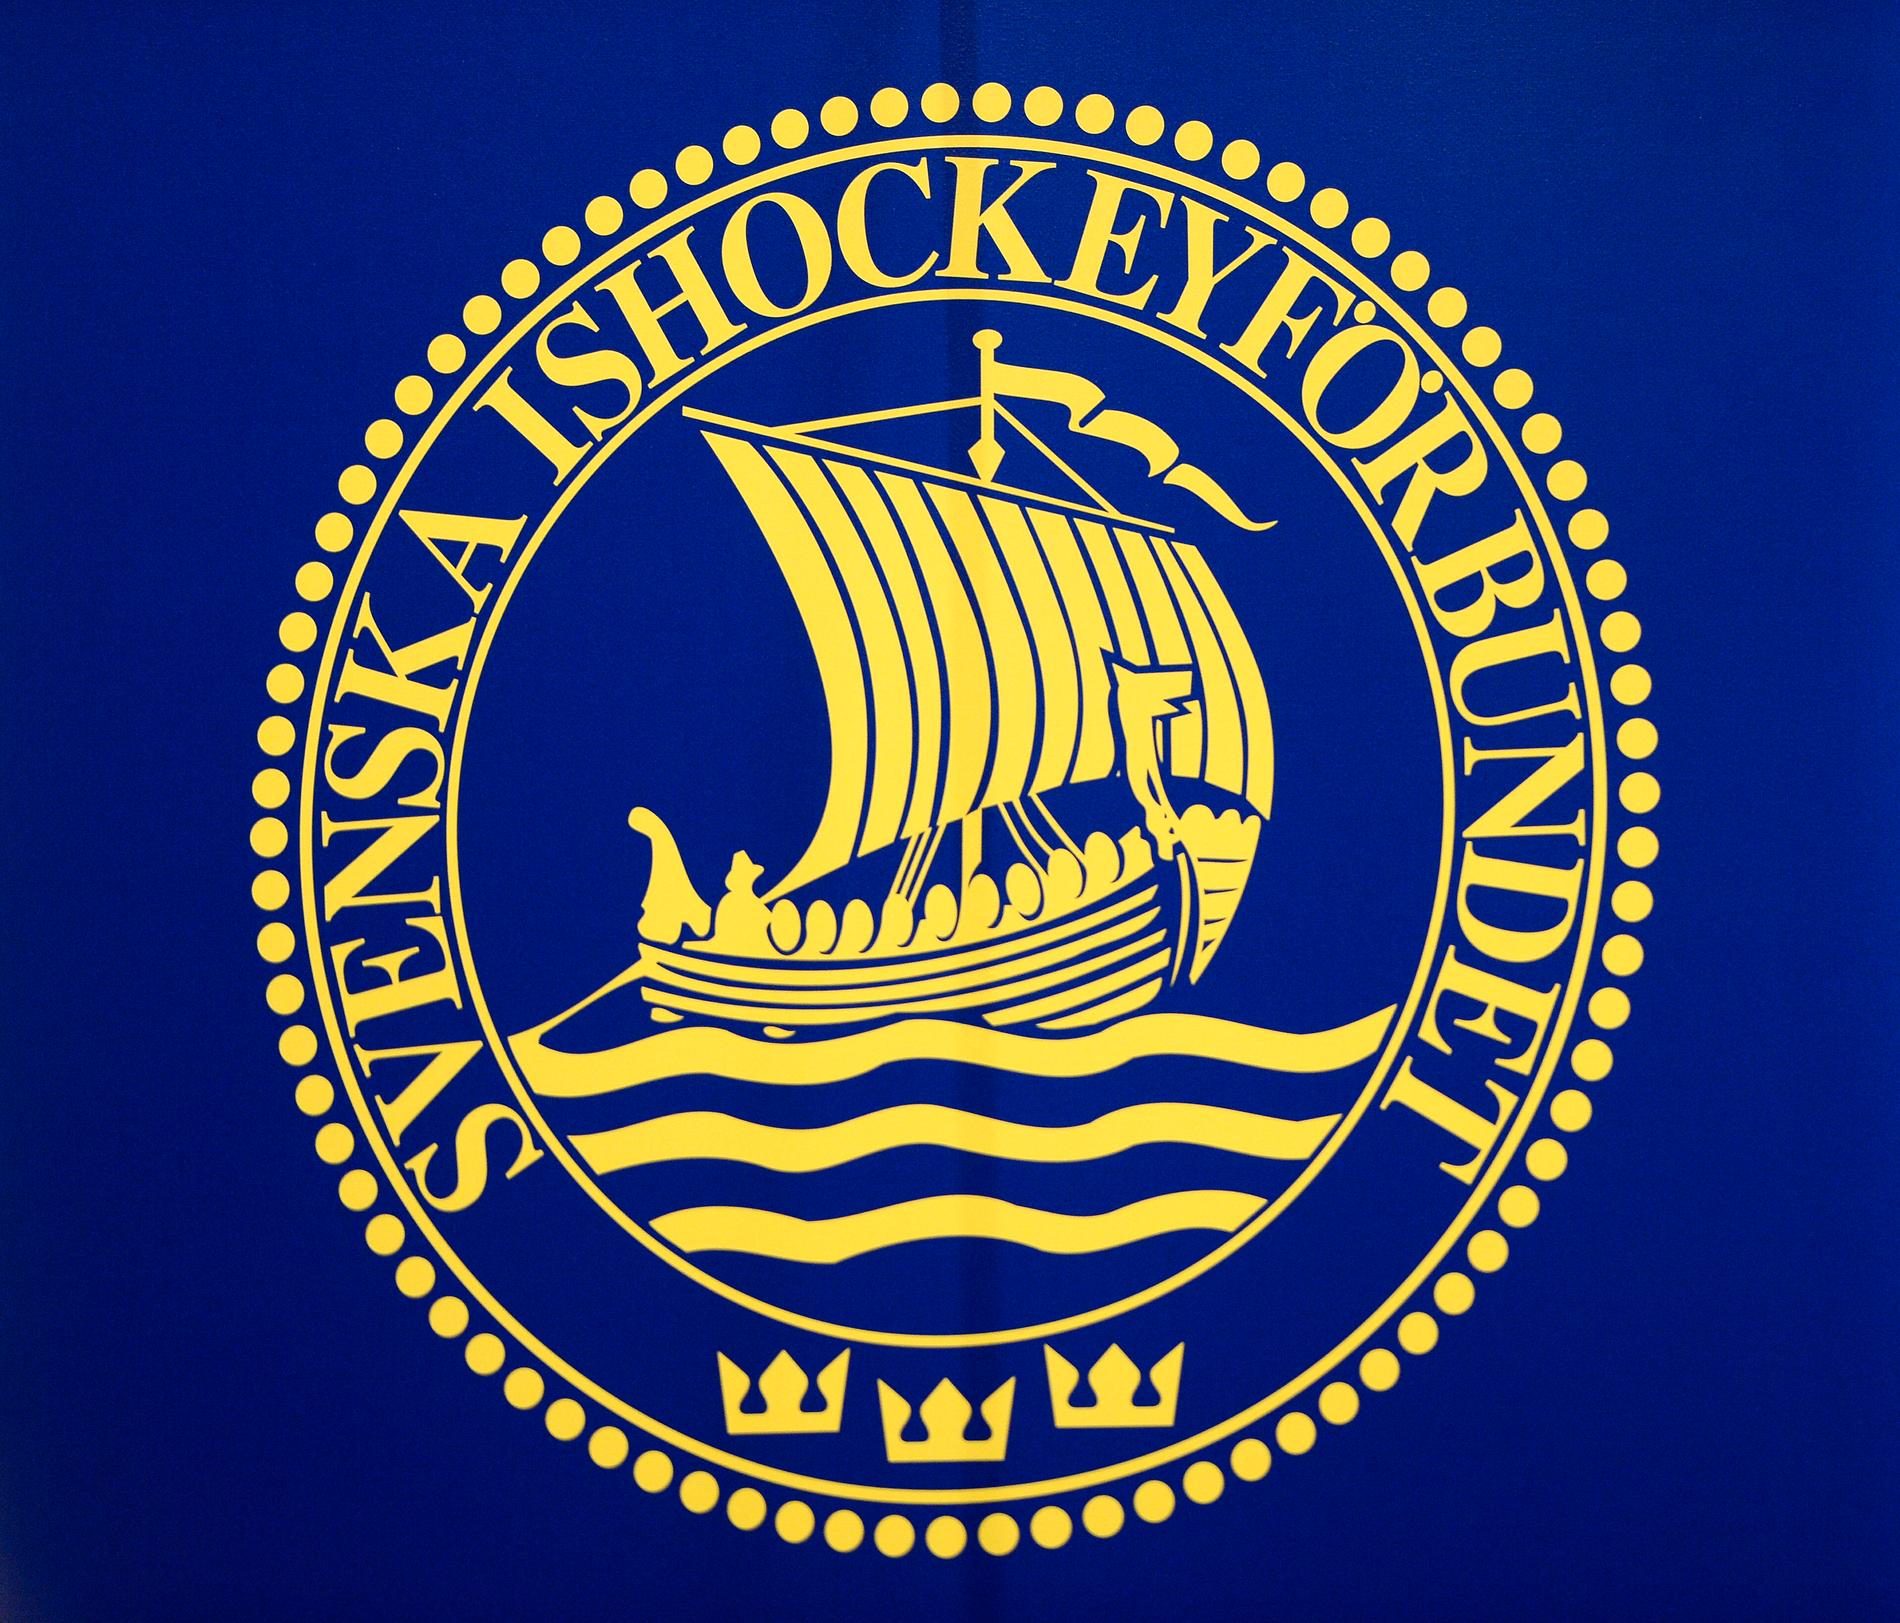 Svenska ishockeyförbundet har anmälts till Arbetsmiljöverket och en inspektion kommer att ske nästa vecka. Arkivbild.